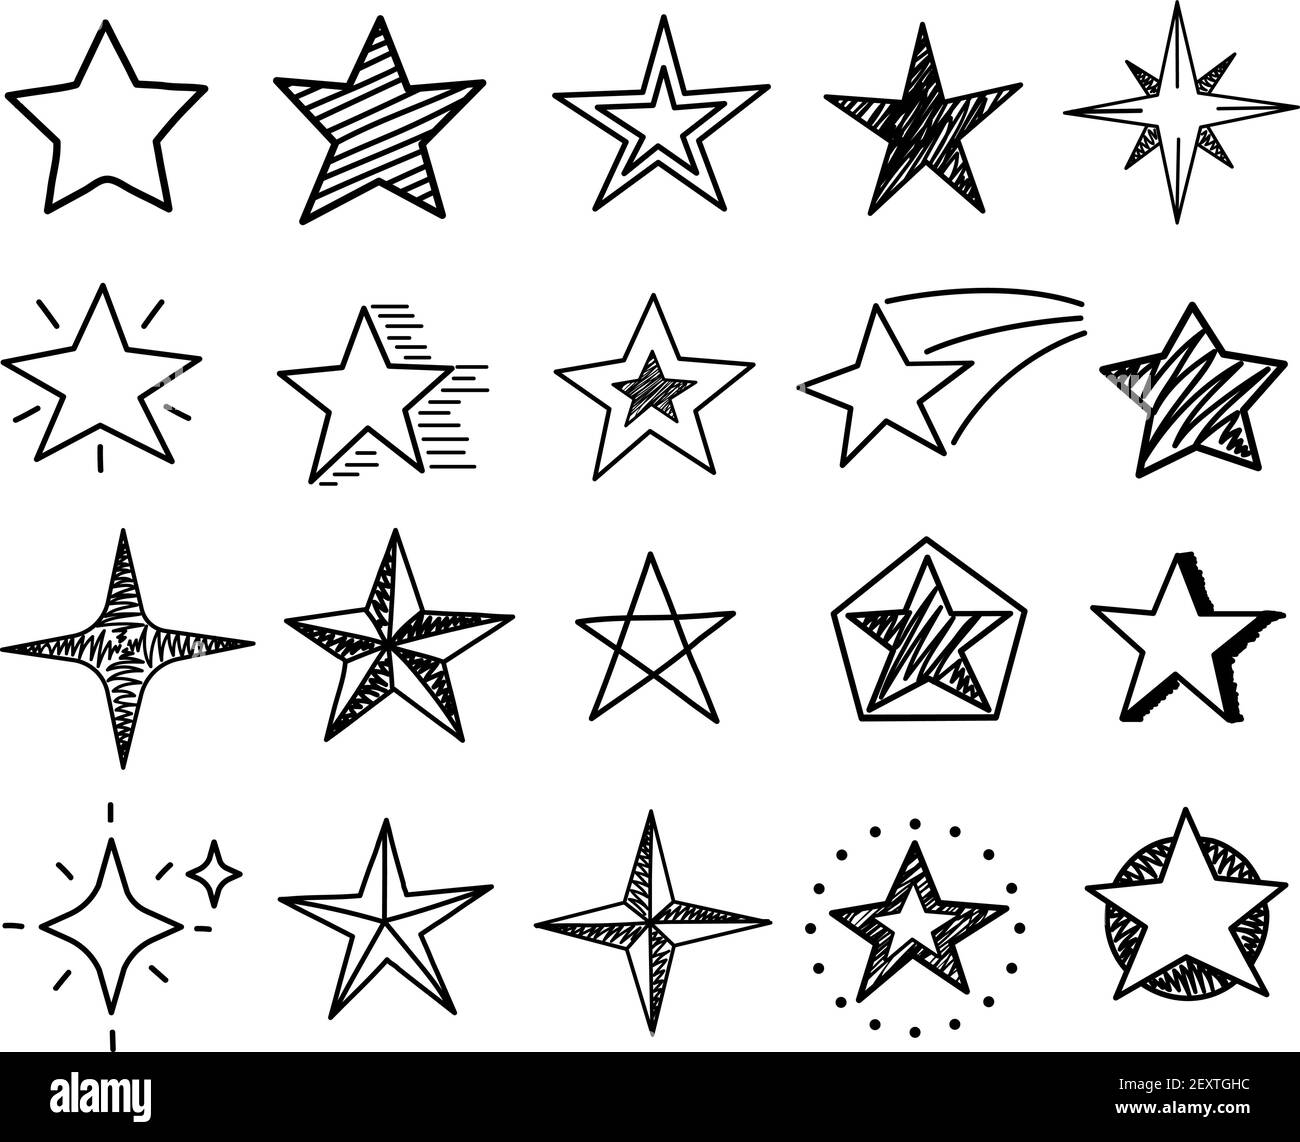 Sterne skizzieren. Niedliche Sternformen, schwarze Starburst Doodle Zeichen für weihnachtsdekoration isoliert Vektor-Set. Stern schwarz gezeichnete Tinte, Illustration Burst Asterisk Freihand Stock Vektor